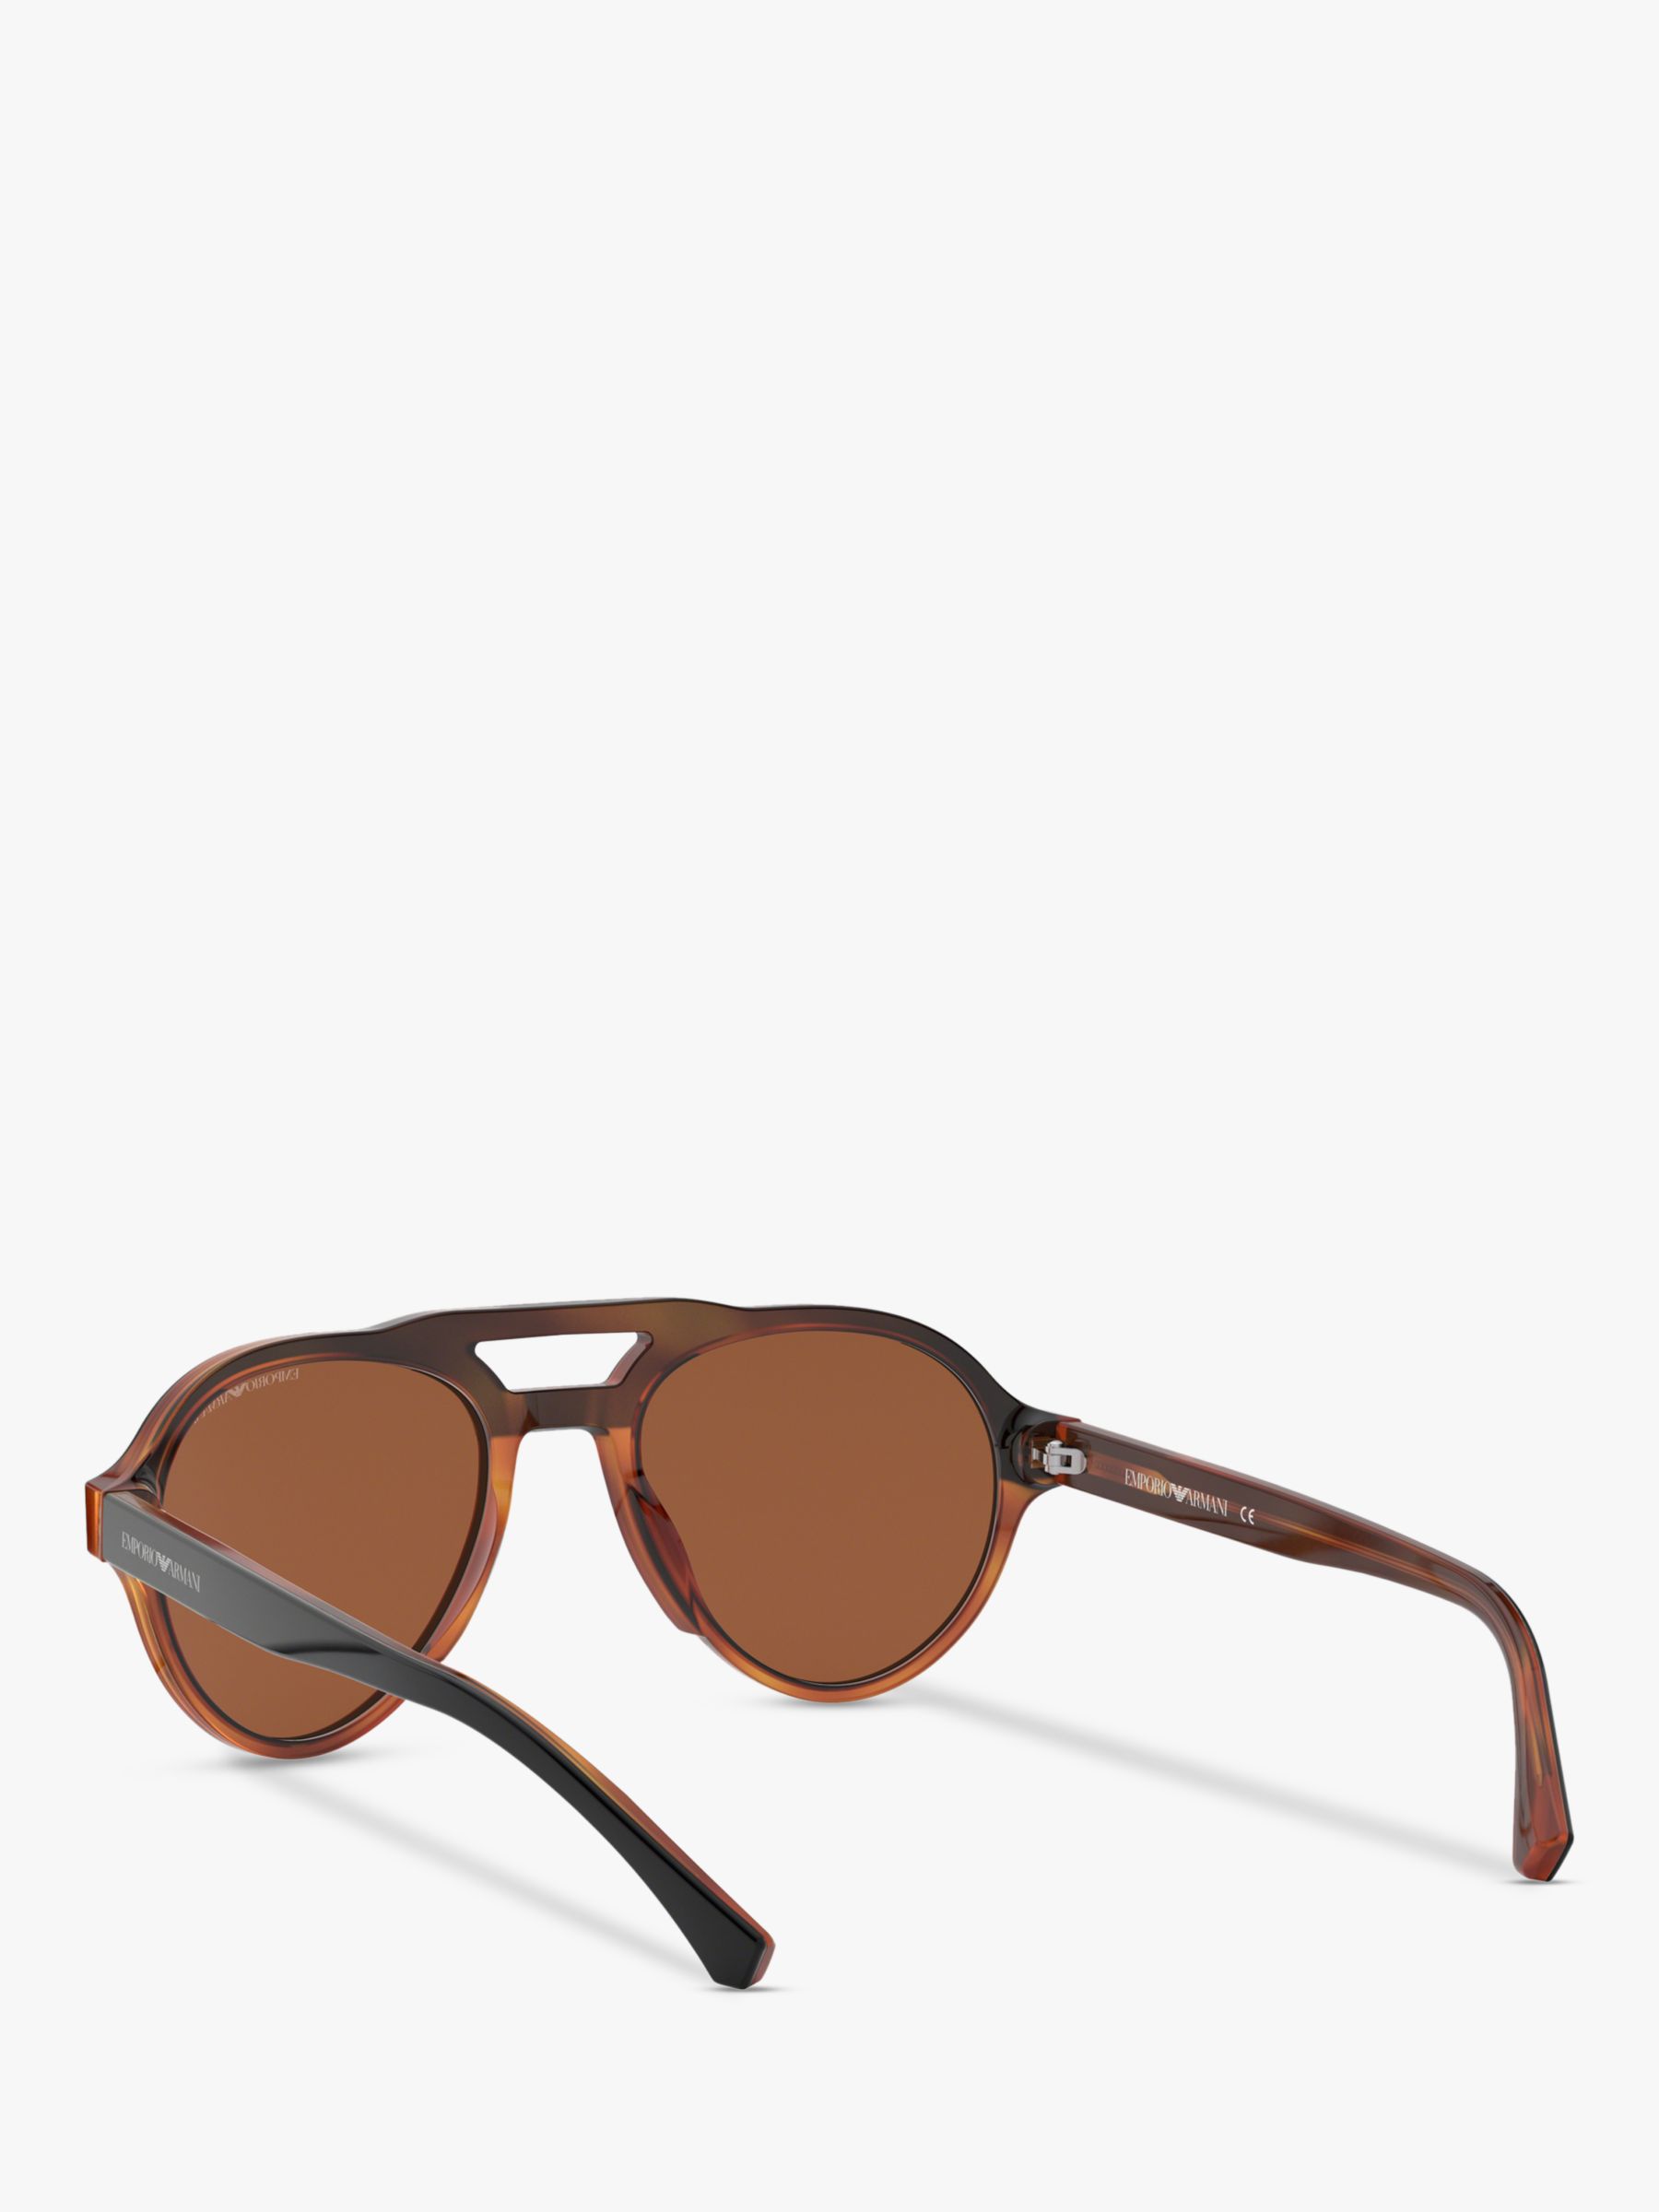 Emporio Armani EA4128 Men's Aviator Sunglasses, Matte Black/Brown